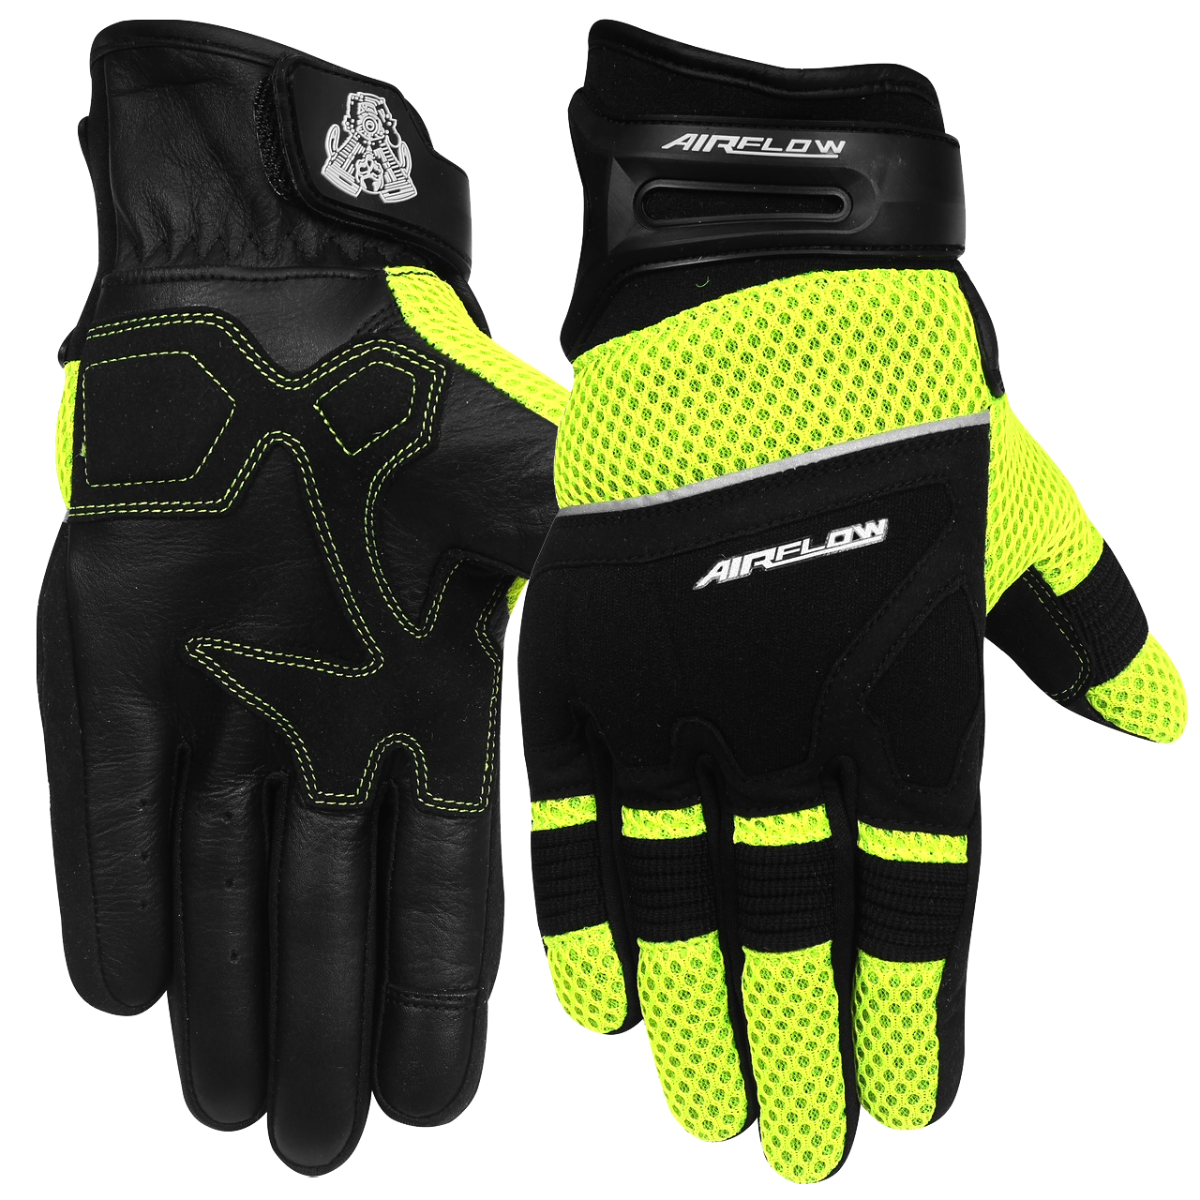 Vance Leather Airflow II Mesh/Textile Motorcycle Gloves, Hi-Vis